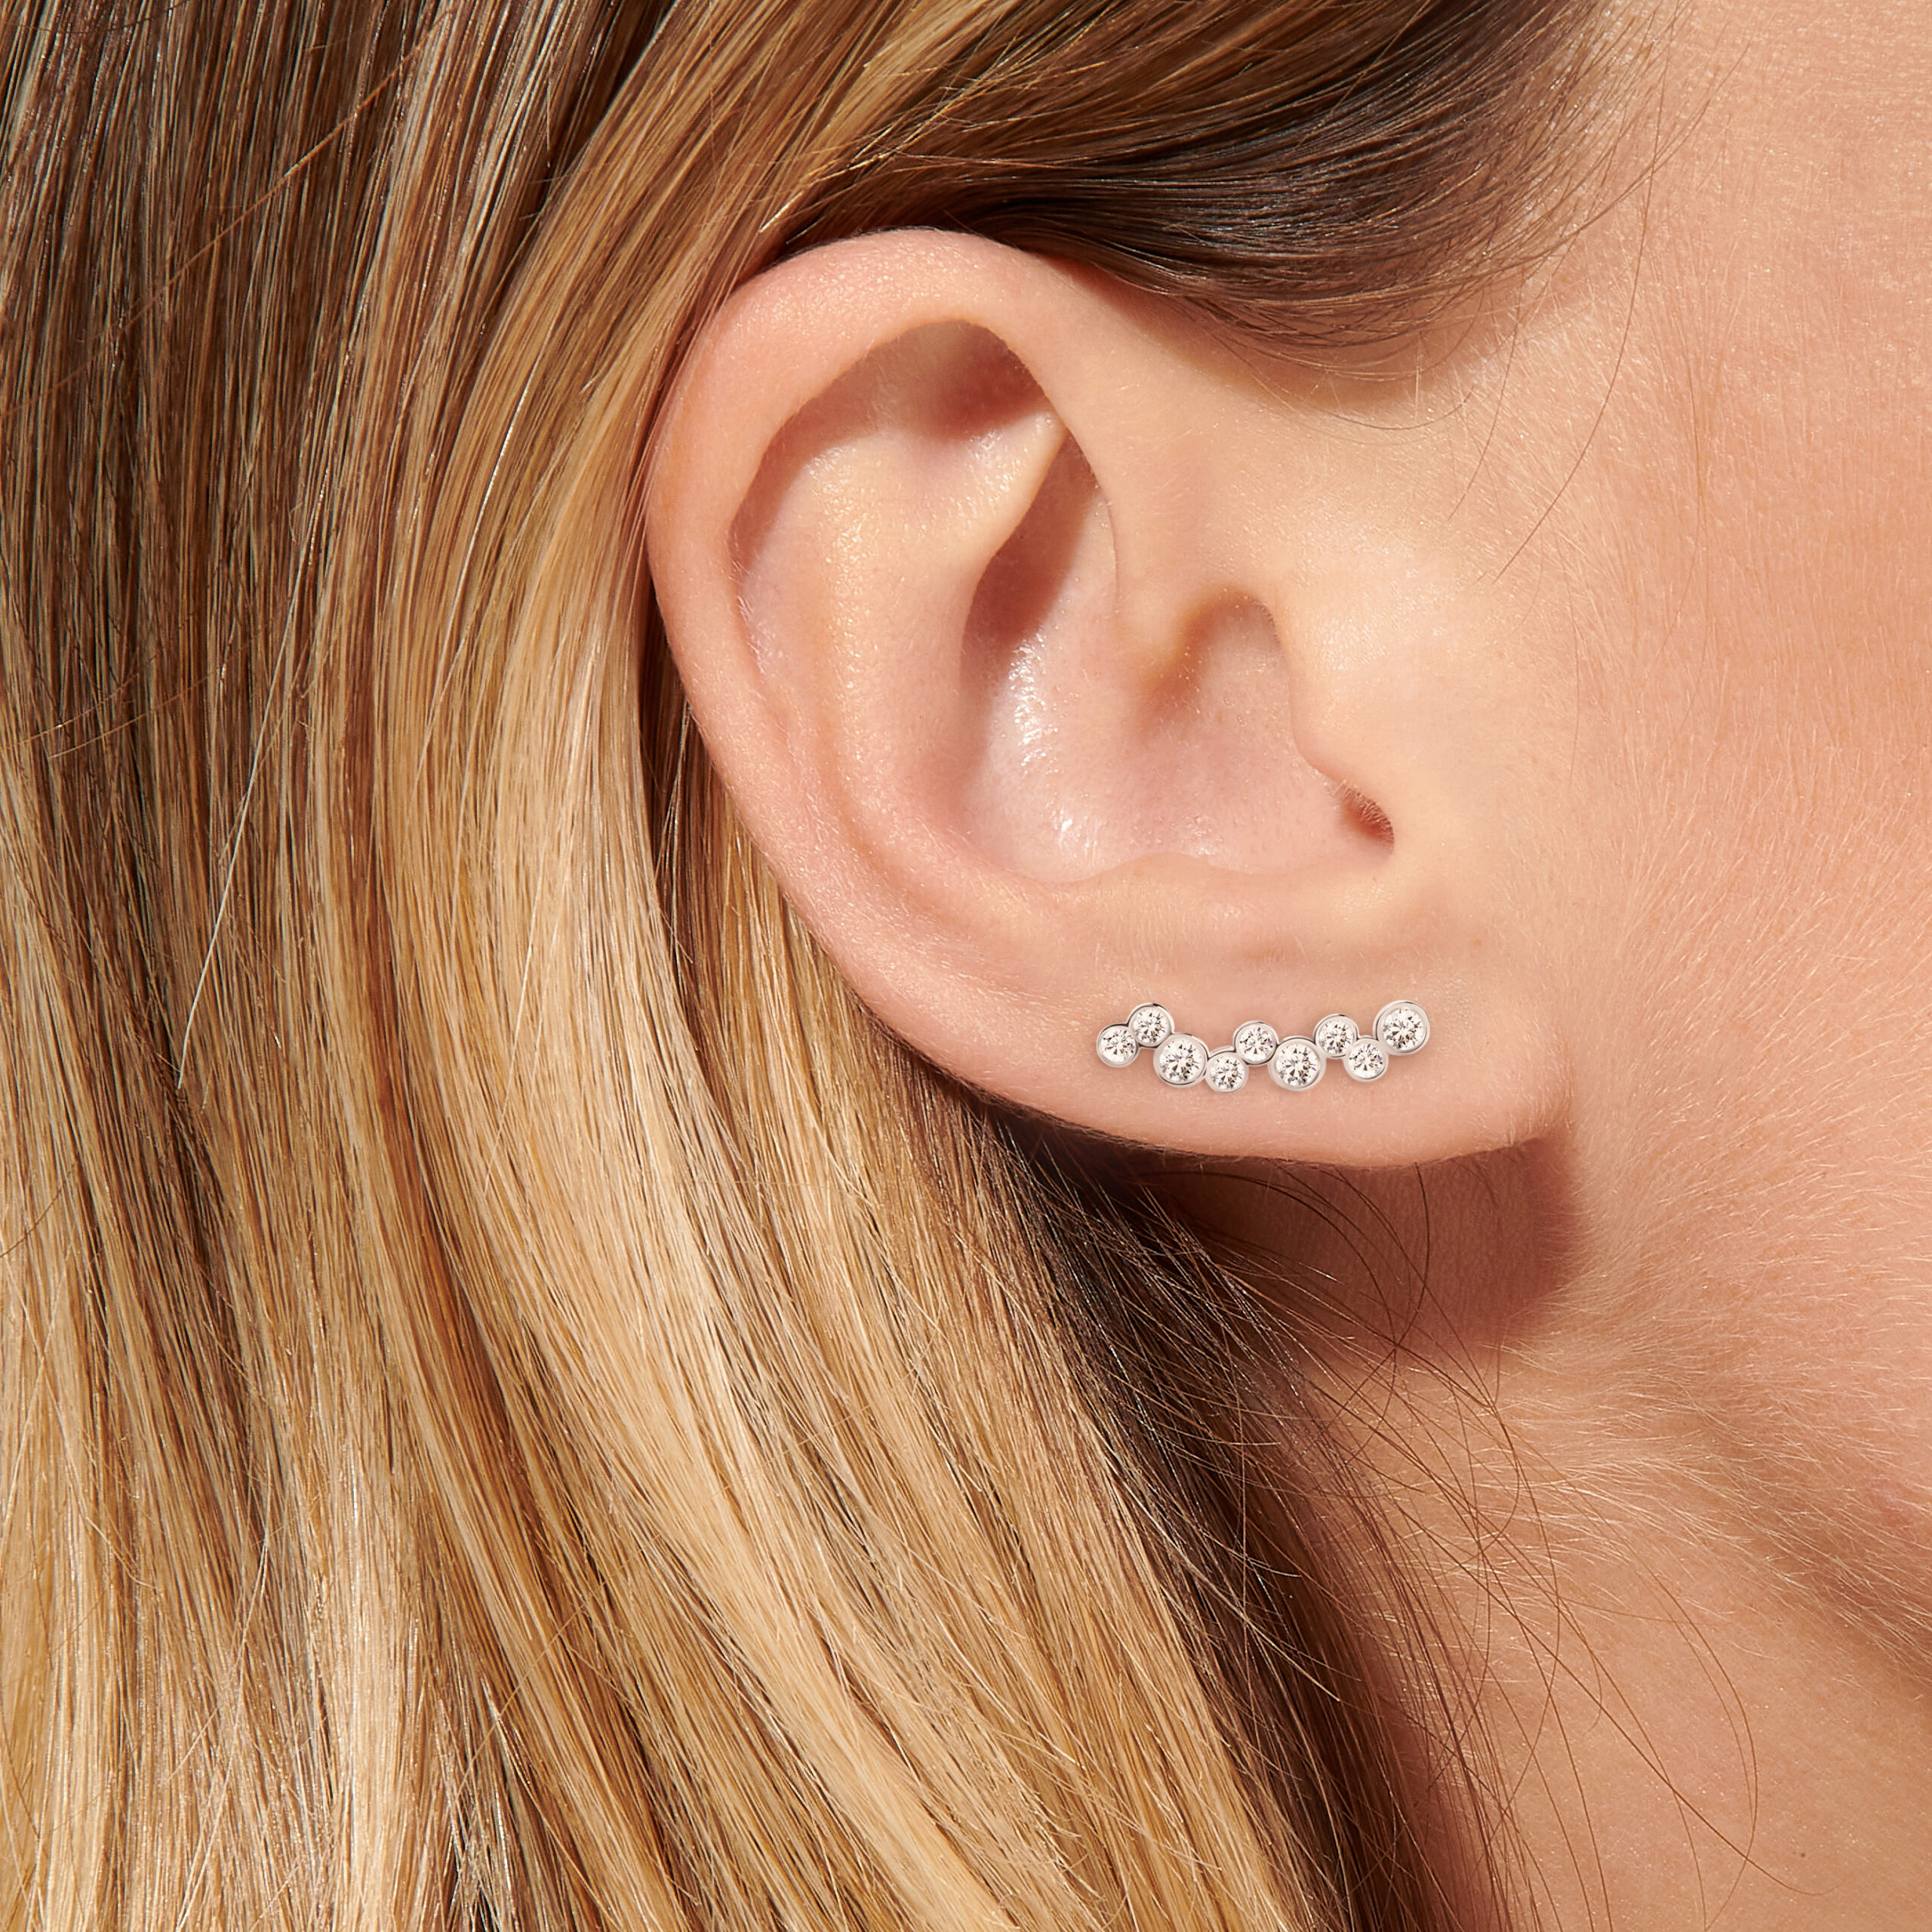 Boucle d'oreilles en diamants naturels qui remonte le long du lobe.